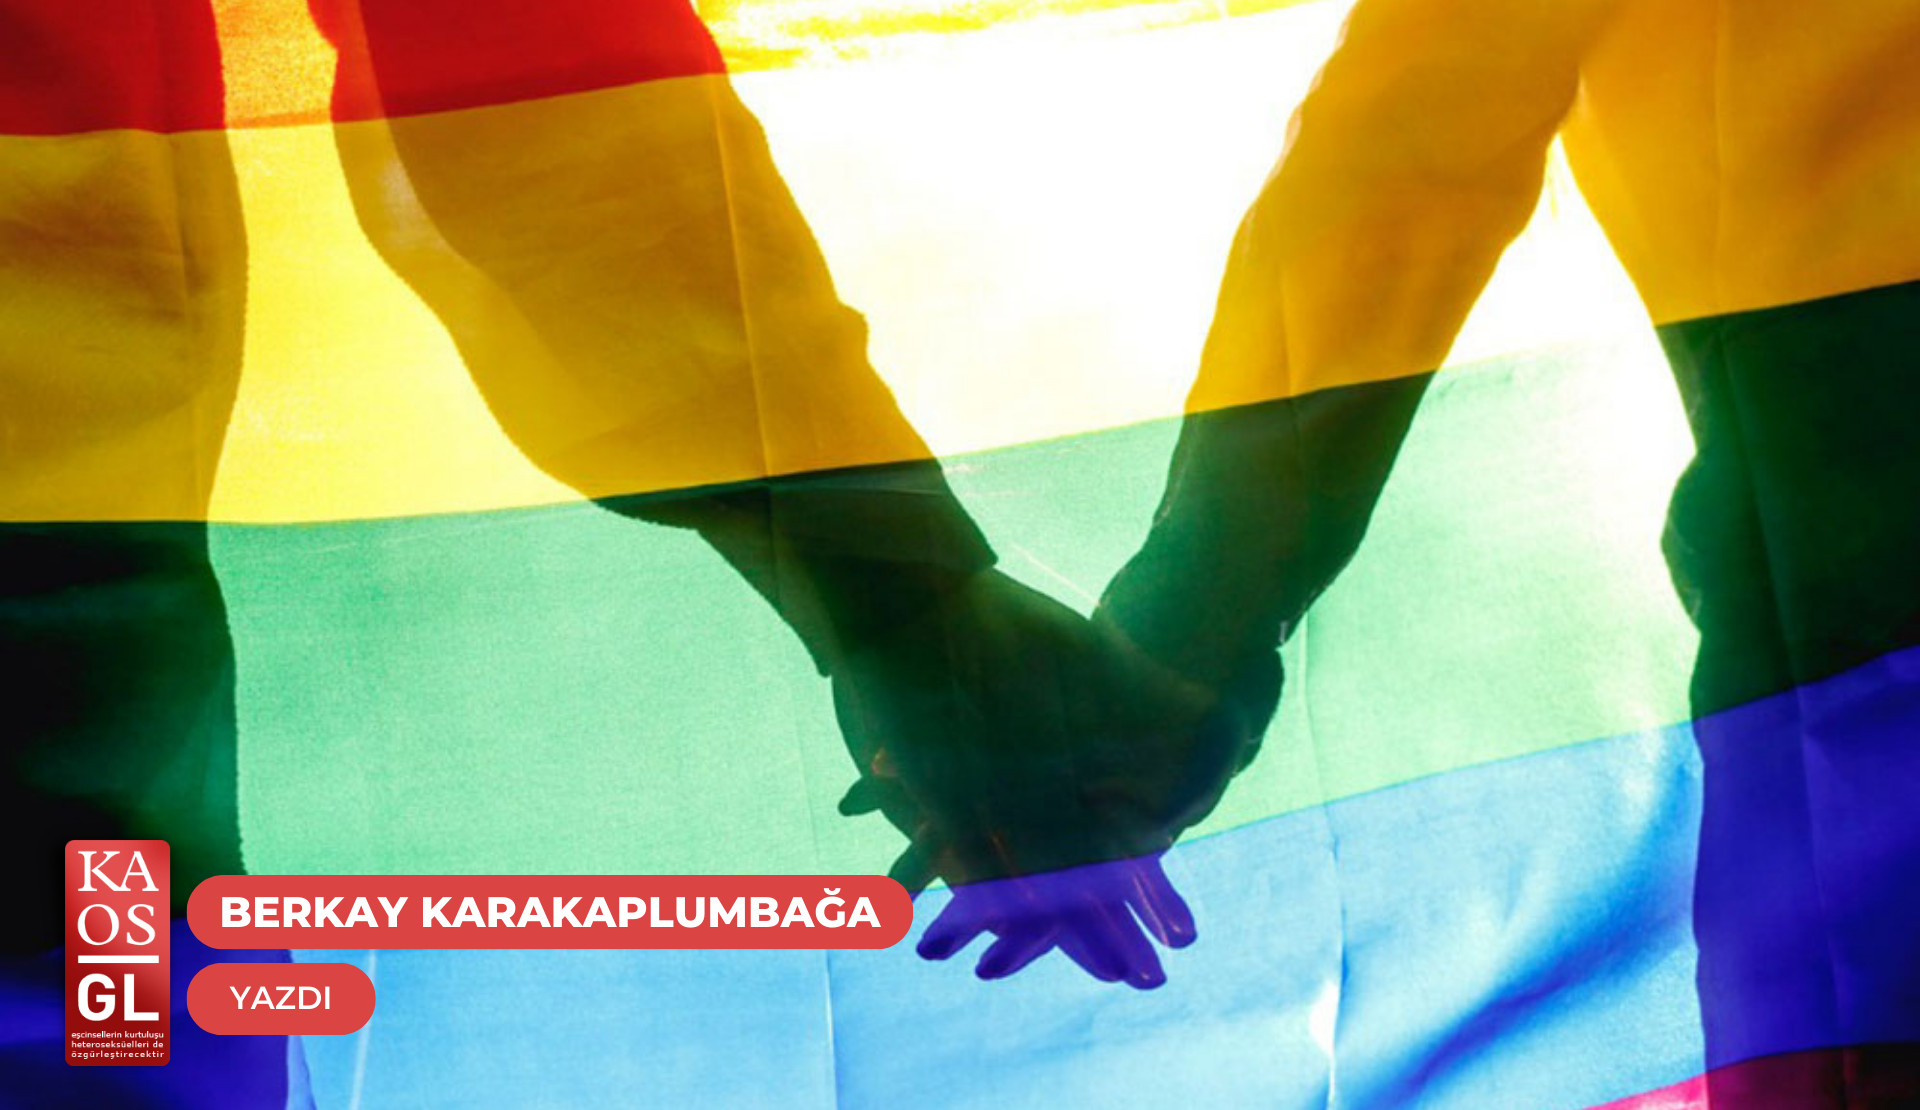 İsmail ile Boğaç’ın hikayesi | Kaos GL - LGBTİ+ Haber Portalı Gökkuşağı Forumu Köşe Yazısı